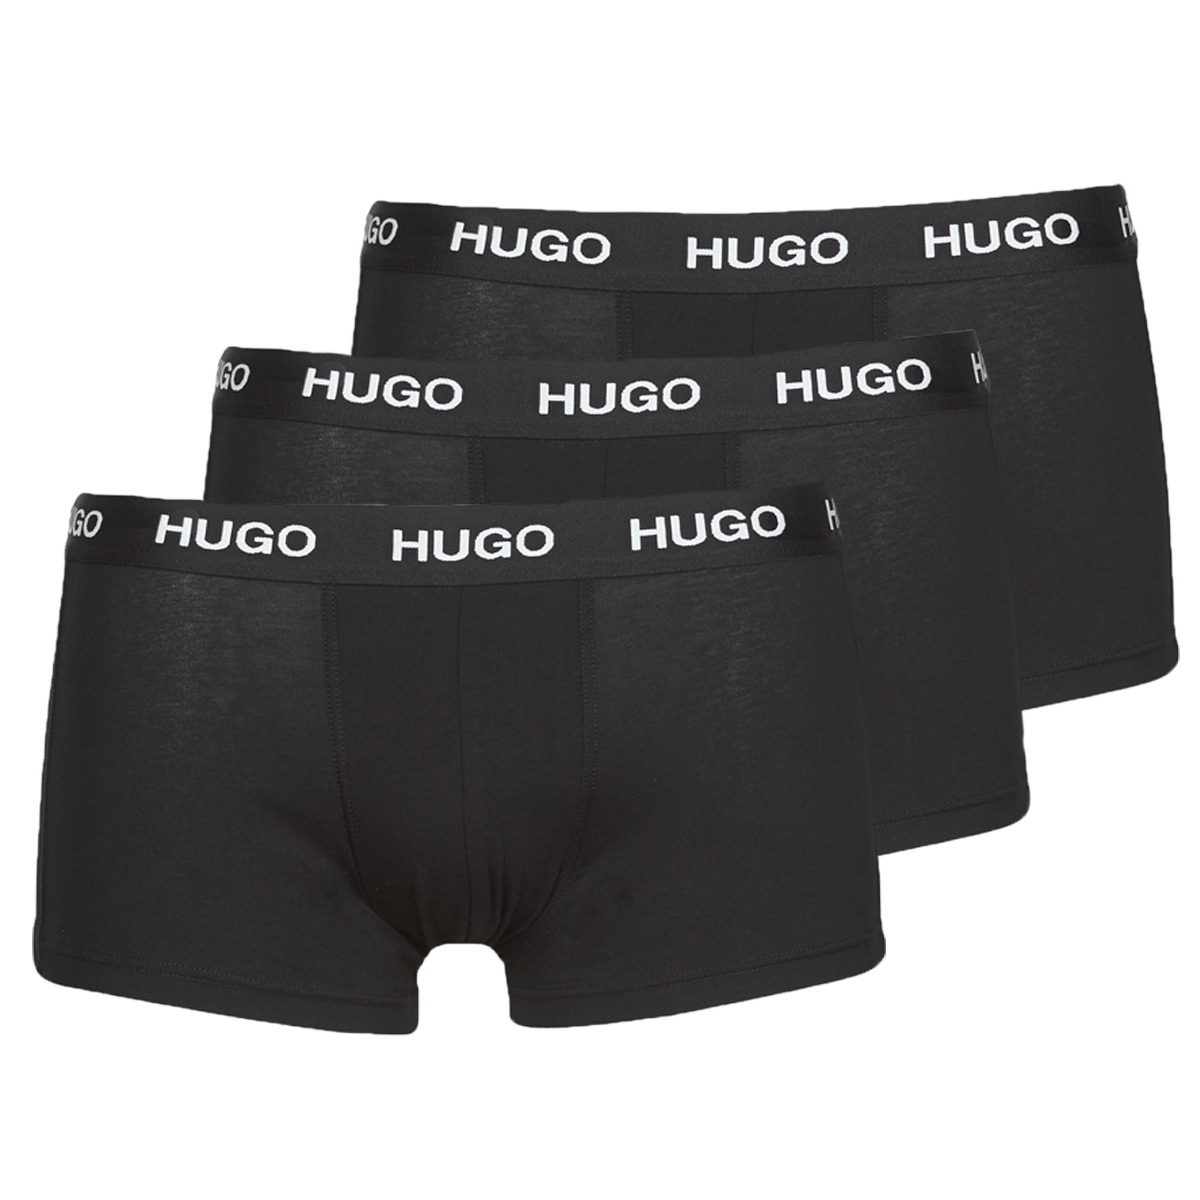 HUGO Noir TRUNK TRIPLET PACK X3 Z2wUYy5v